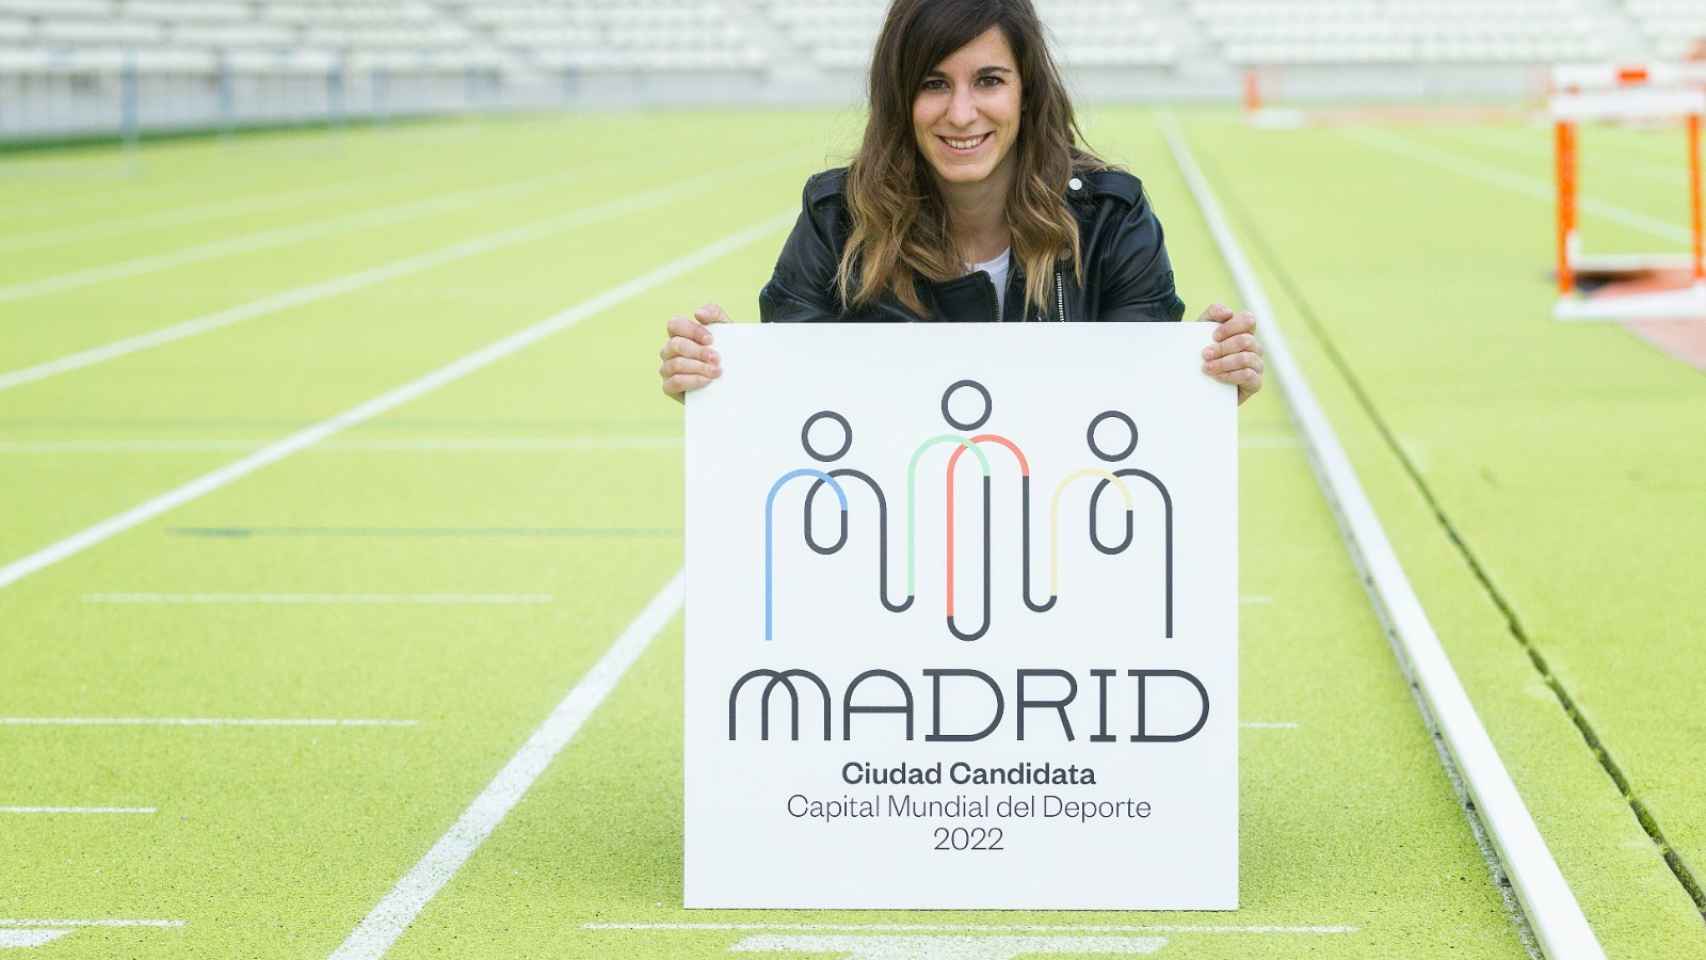 Sofía Miranda posa con el logo de la candidatura de Madrid Capital Mundial del Deporte